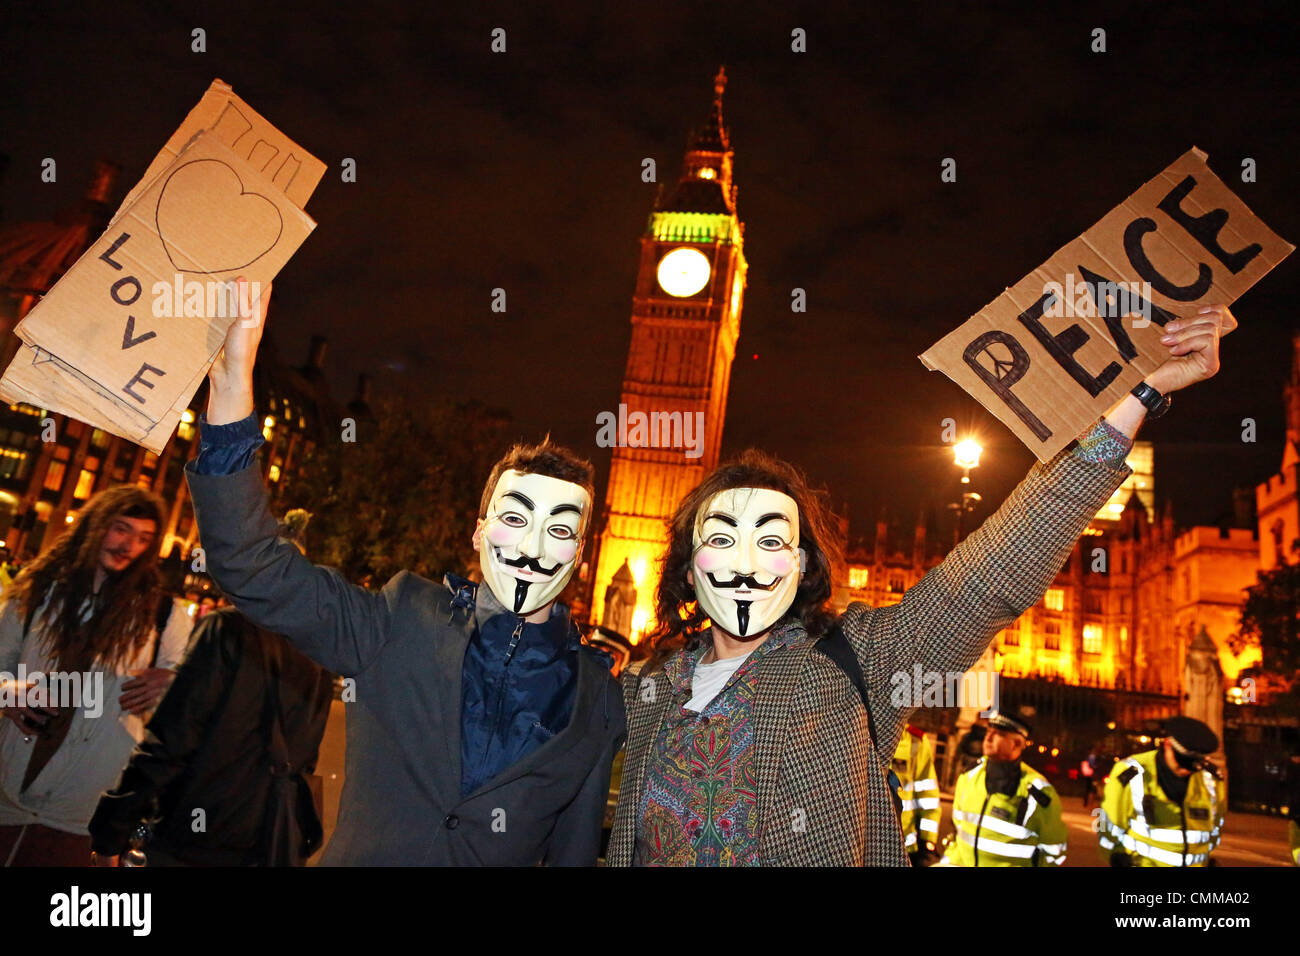 London, UK. 5. November 2013. Demonstranten mit anonymen Masken vor der Houses of Parliament am 5. November Proteste in Parliament Square einschließlich OpVendetta von anonymen UK regierungsfeindlichen schneidet Demonstranten und Anti-Dachs Keulung Demonstrationen, London, England-Credit: Paul Brown/Alamy Live News Stockfoto